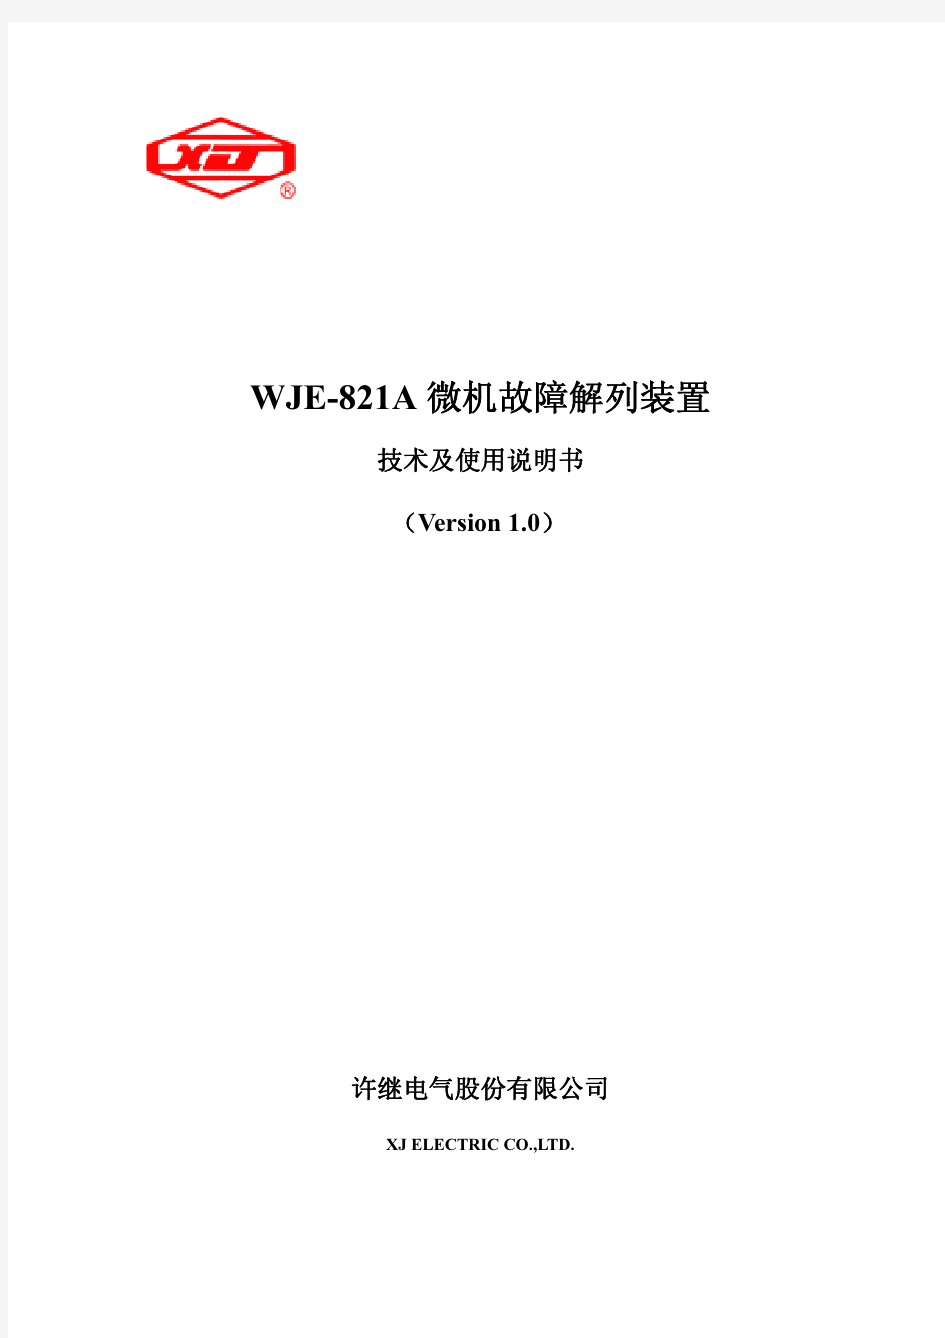 WJE-821A V1.0 微机故障解列装置技术说明书